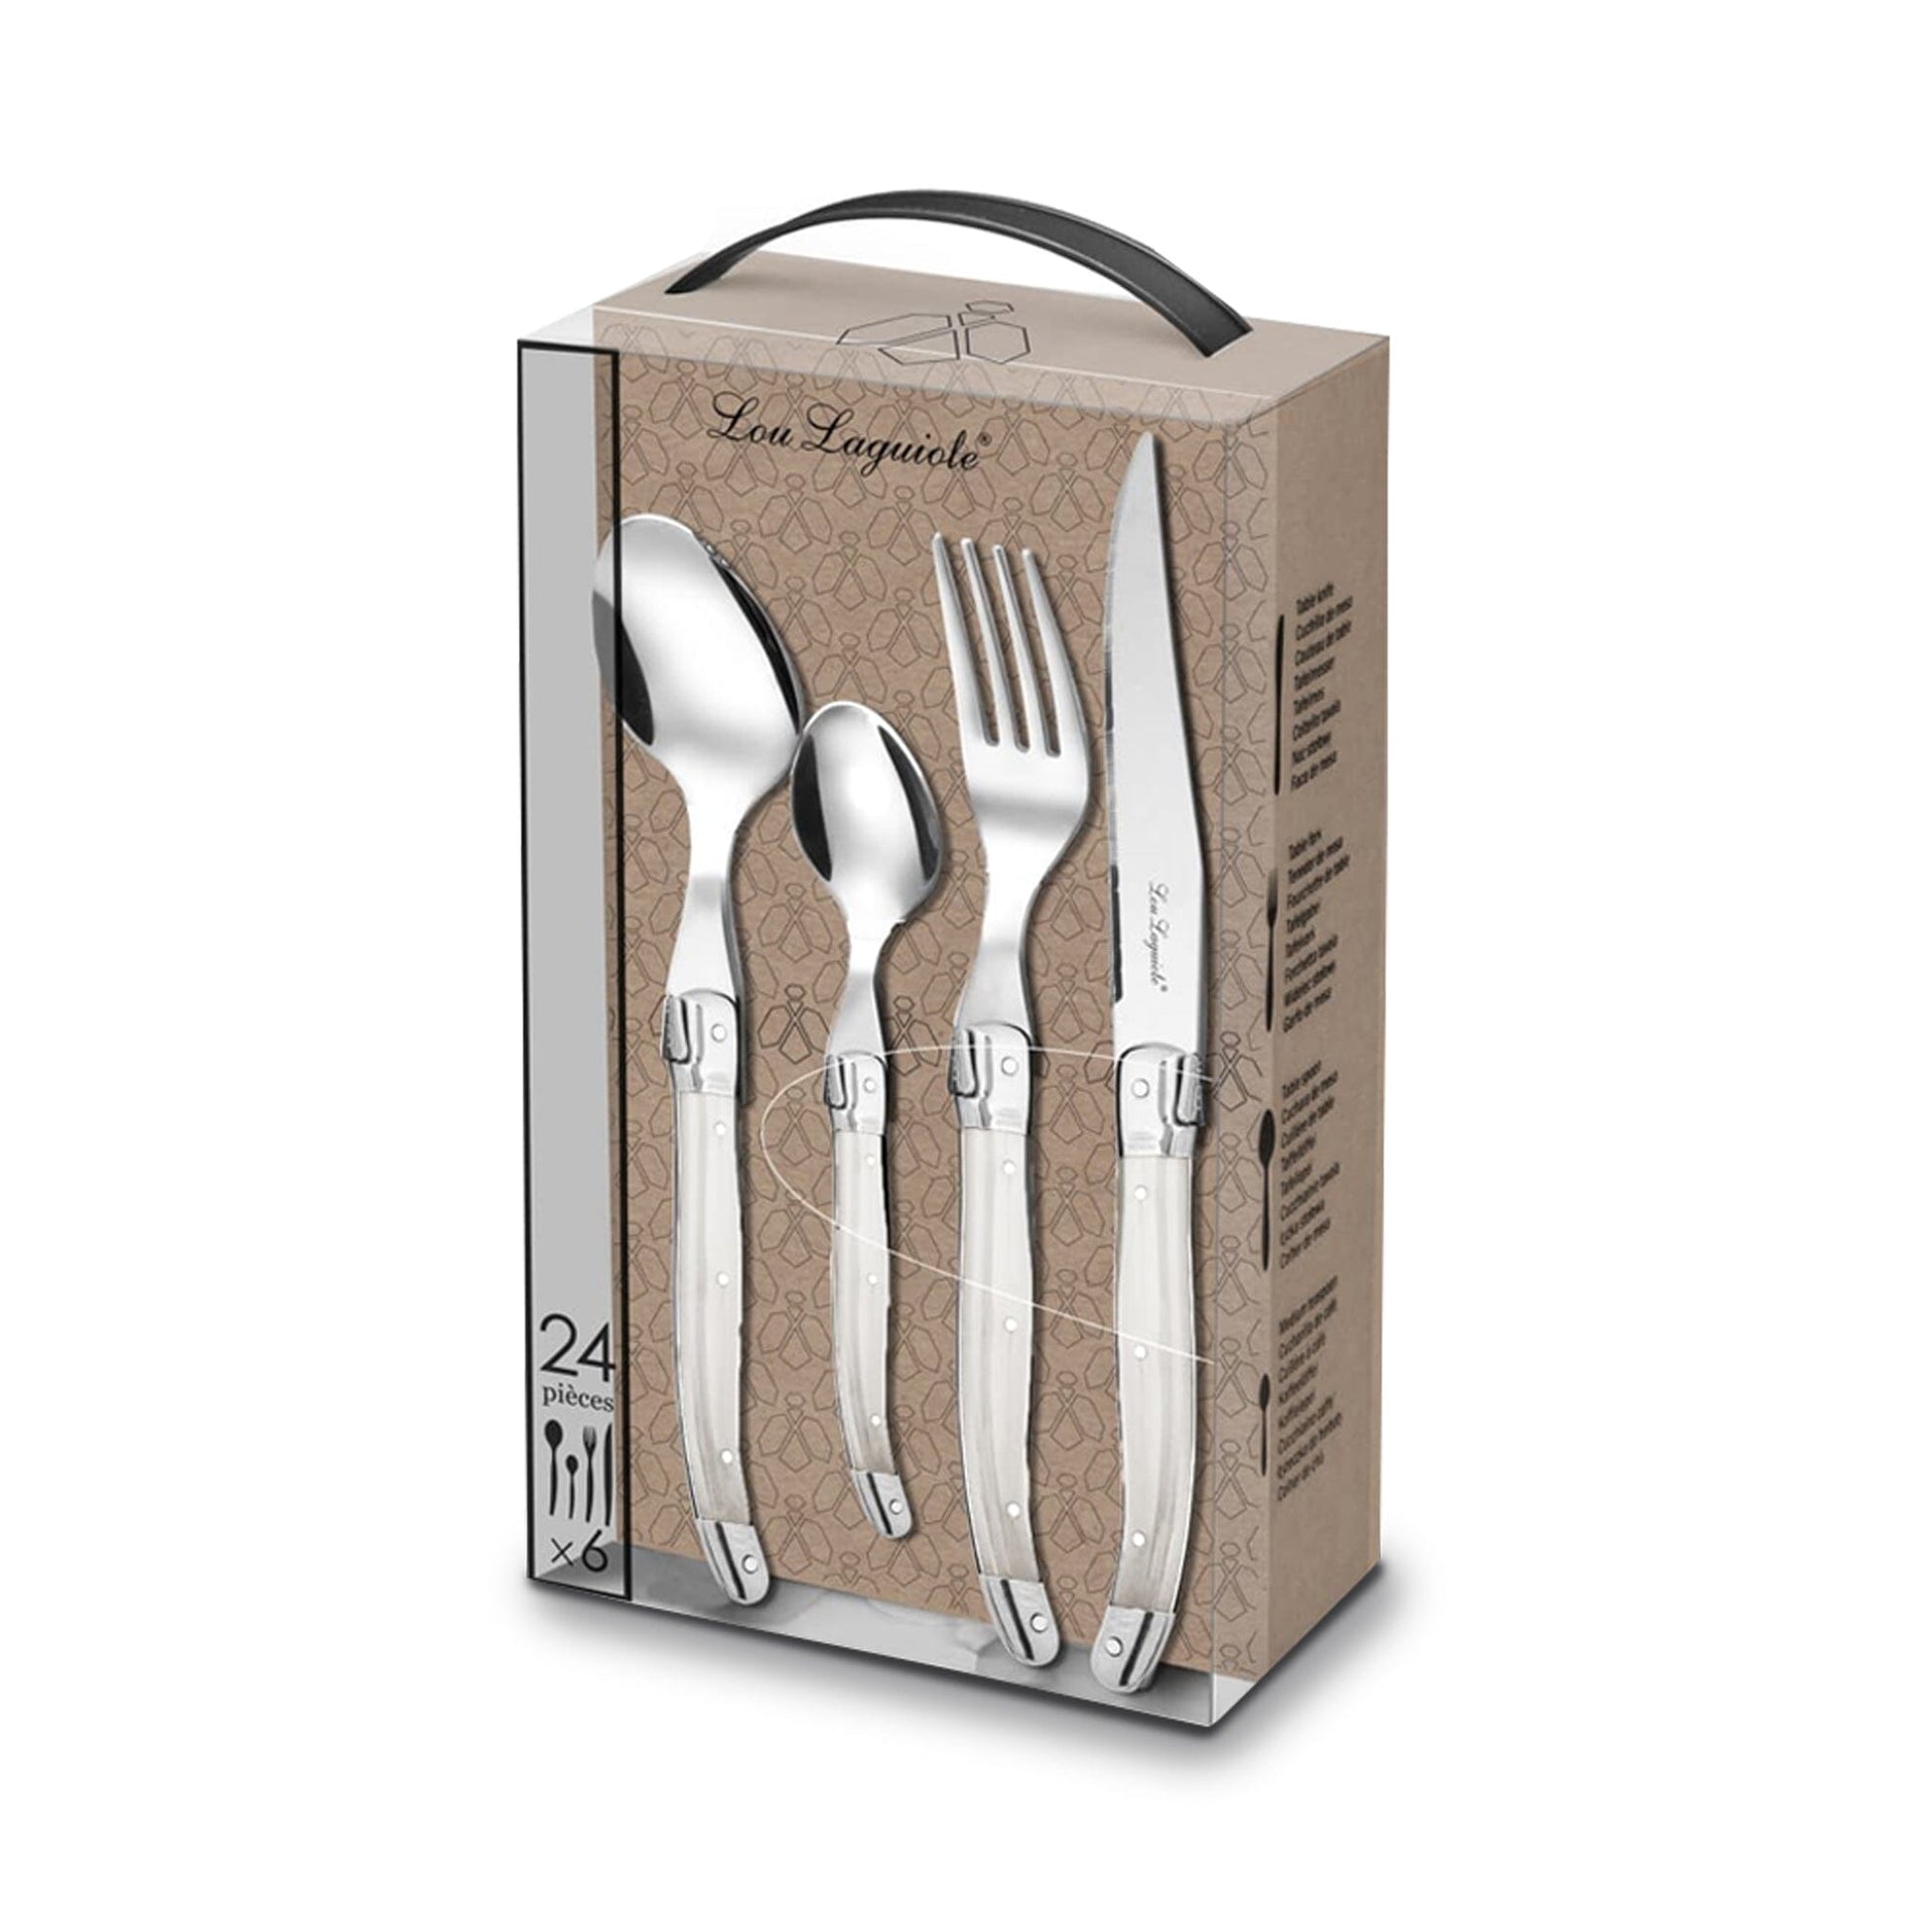 Lou Laguiole - 24-pc cutlery set in open window box - pearl Bestekset Lou Laguiole 